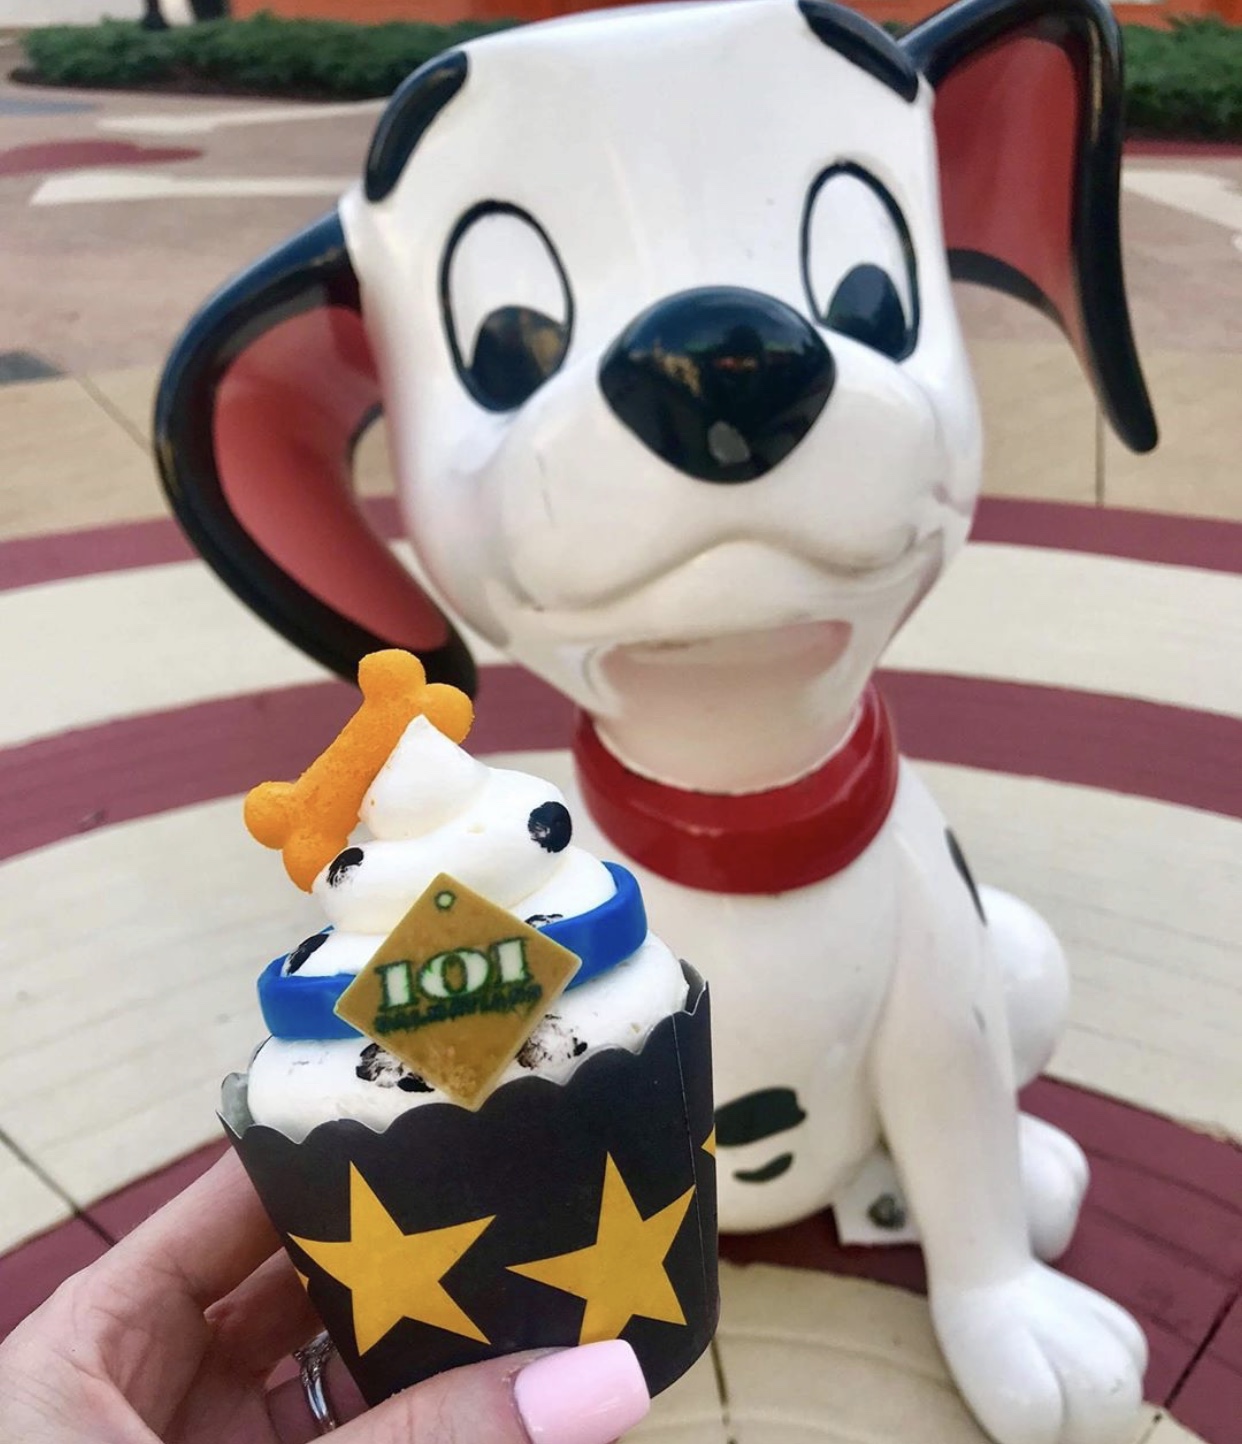 New 101 Dalmatians Cupcake At All-Star Movies Resort